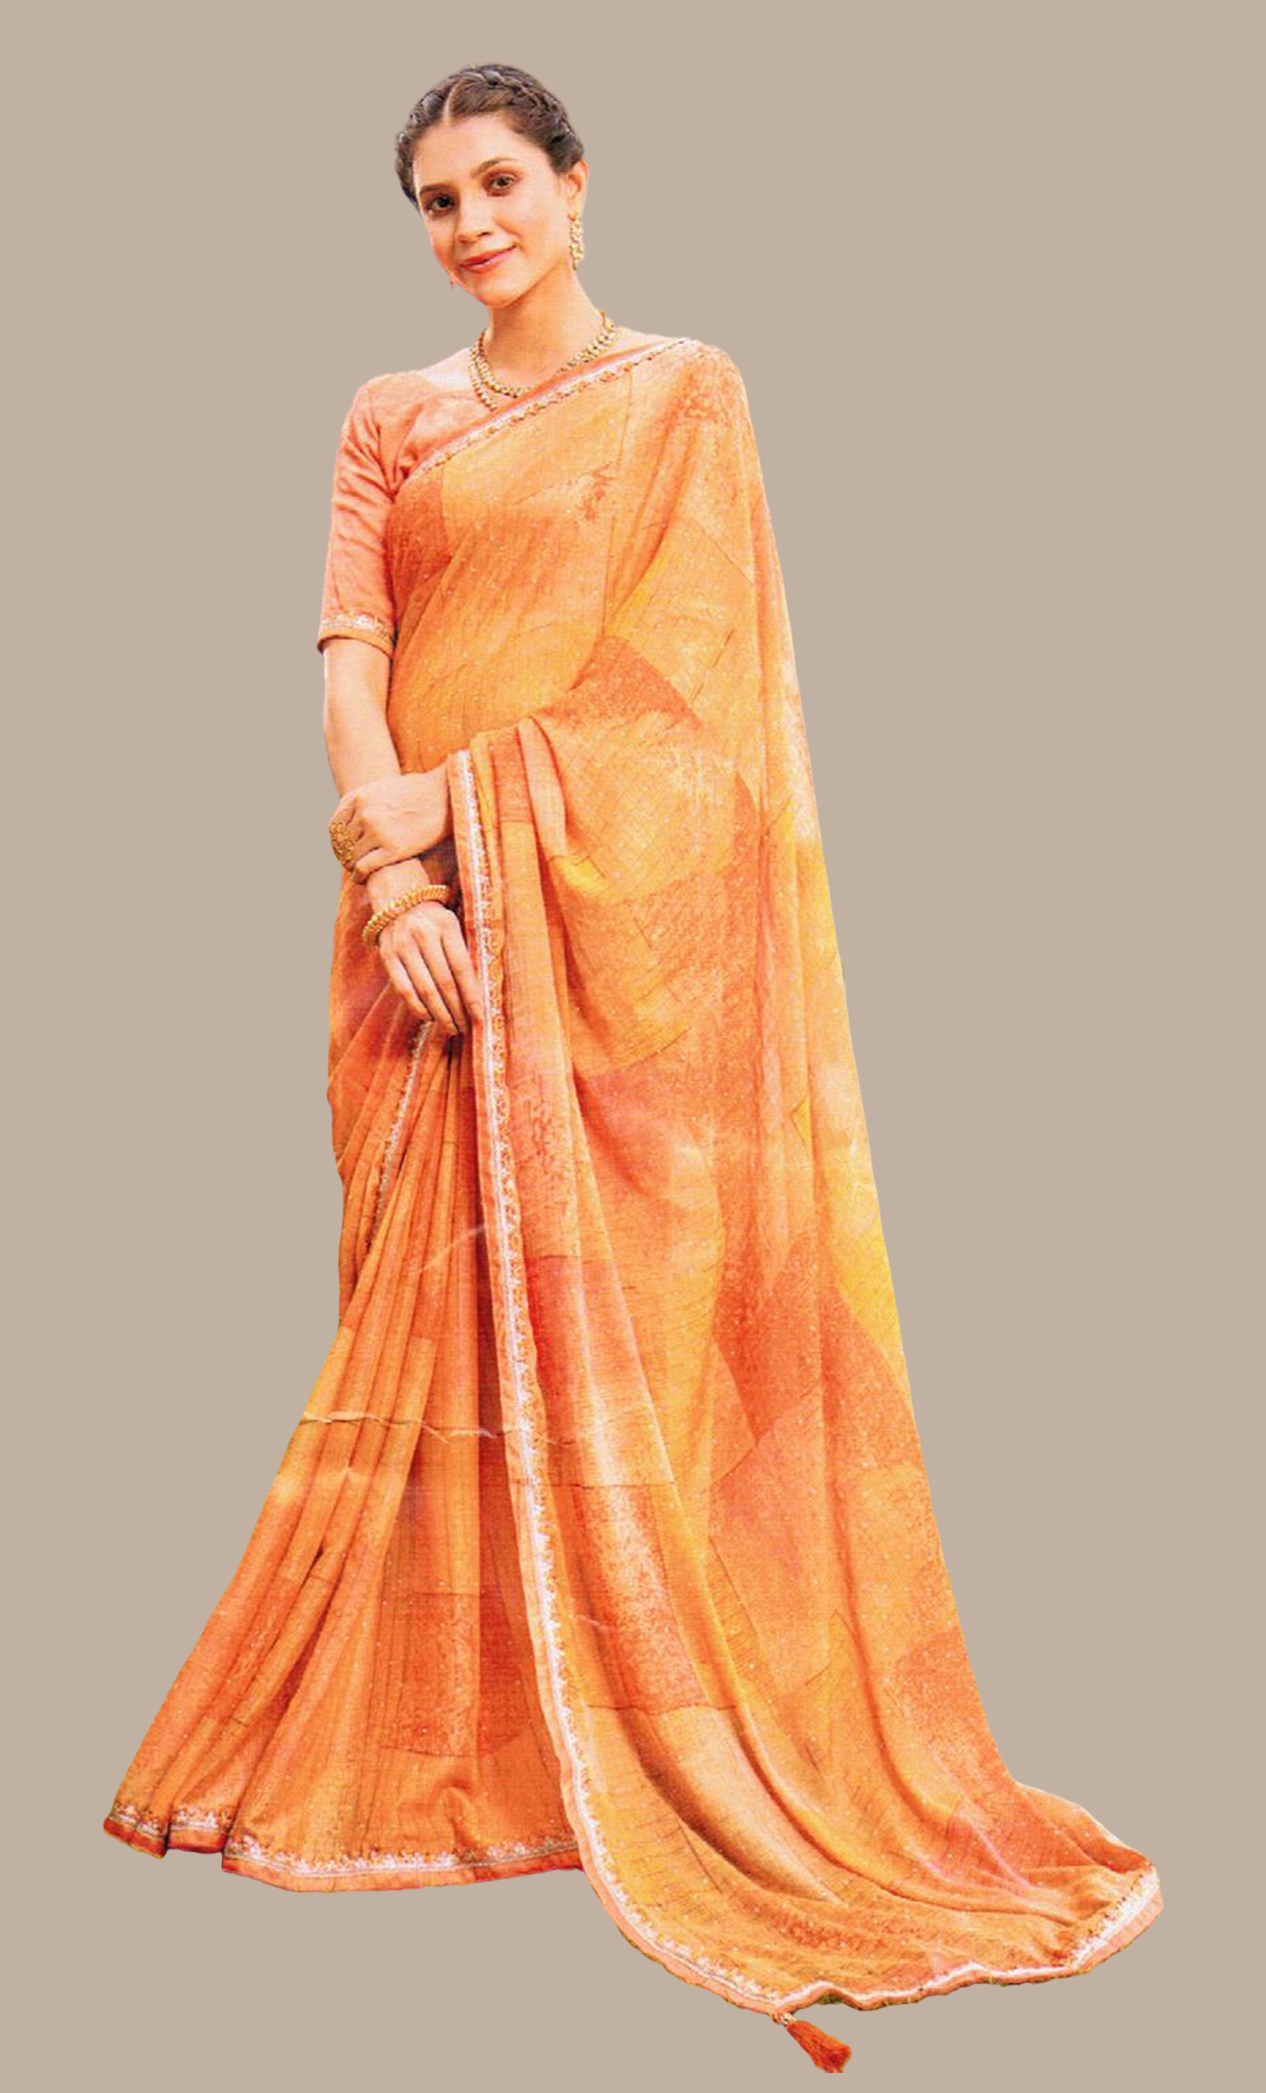 Tangerine Printed Sari